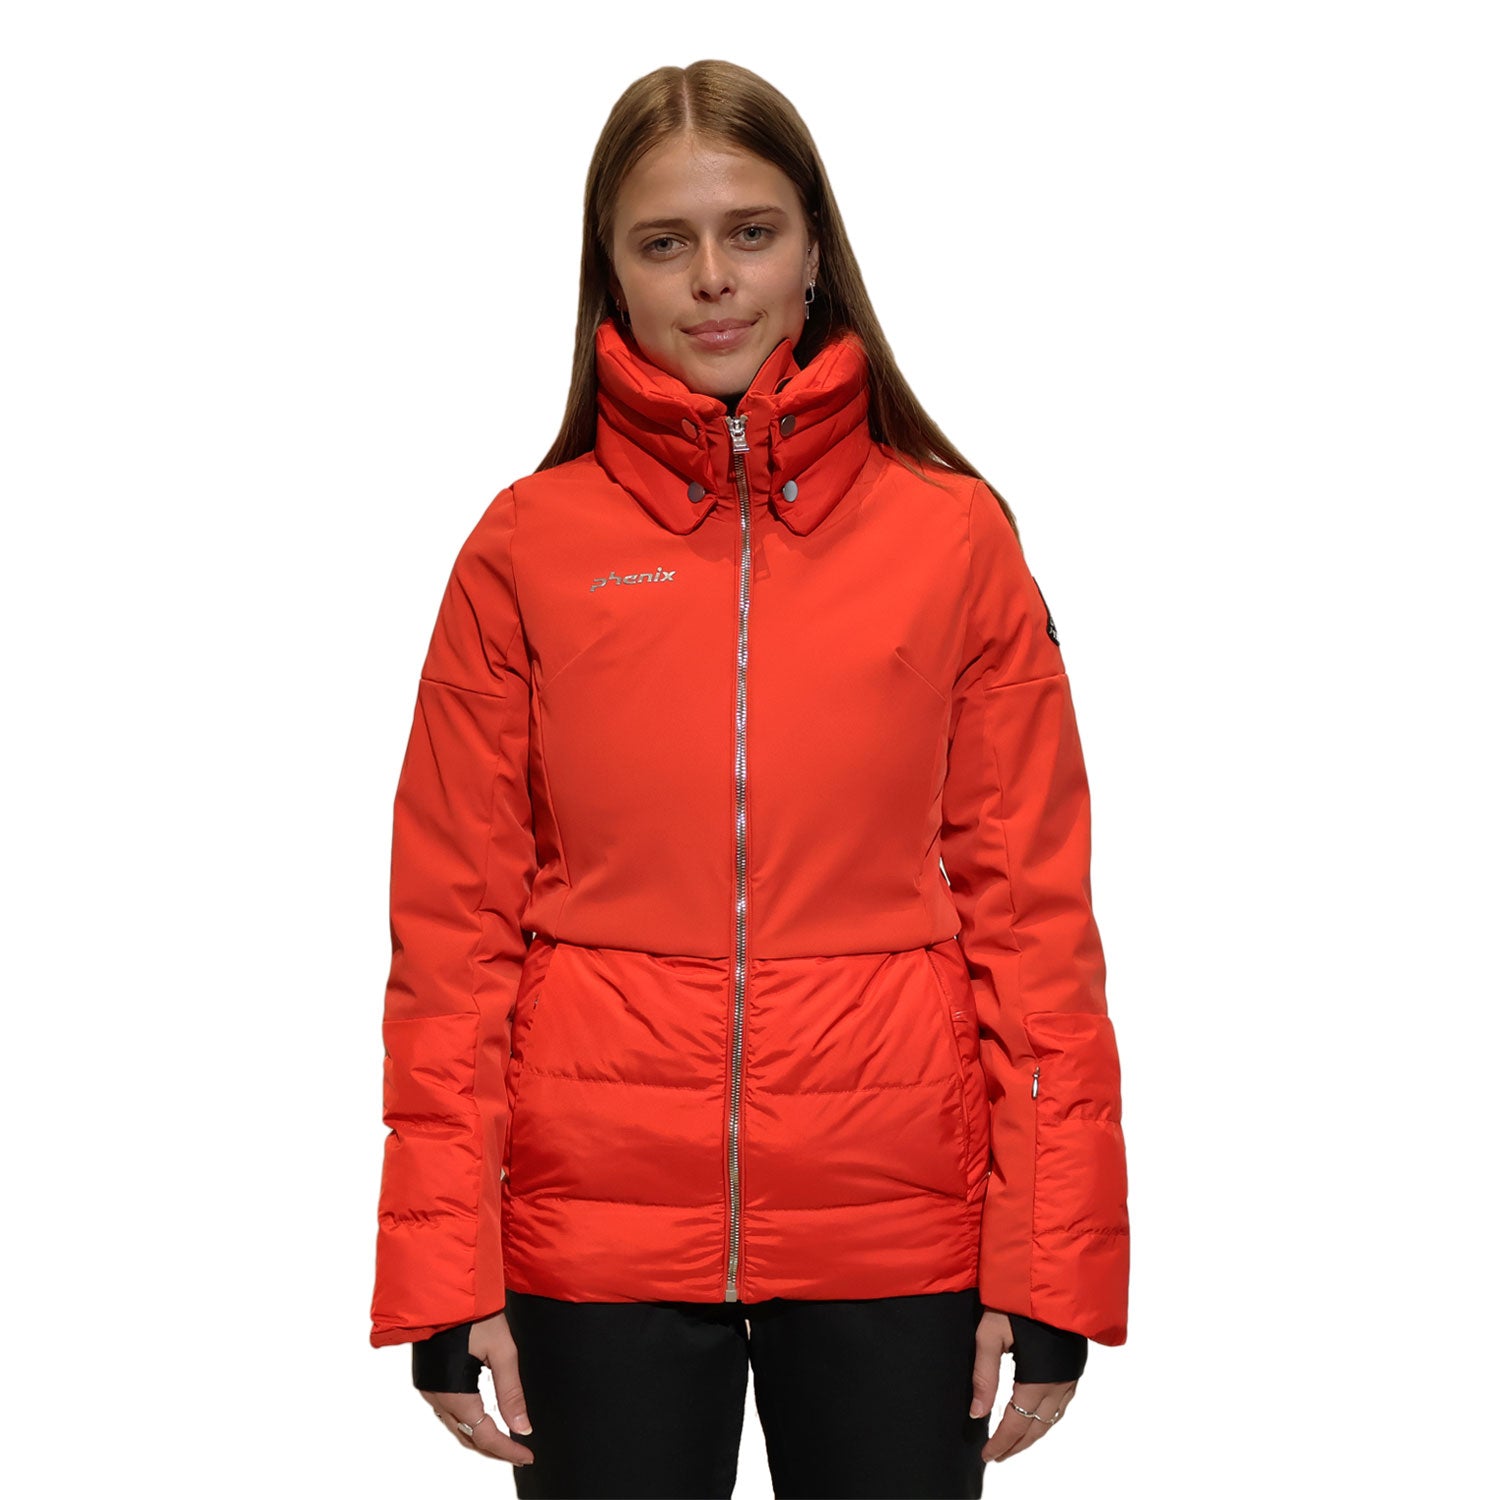 Garnet Ski Jacket